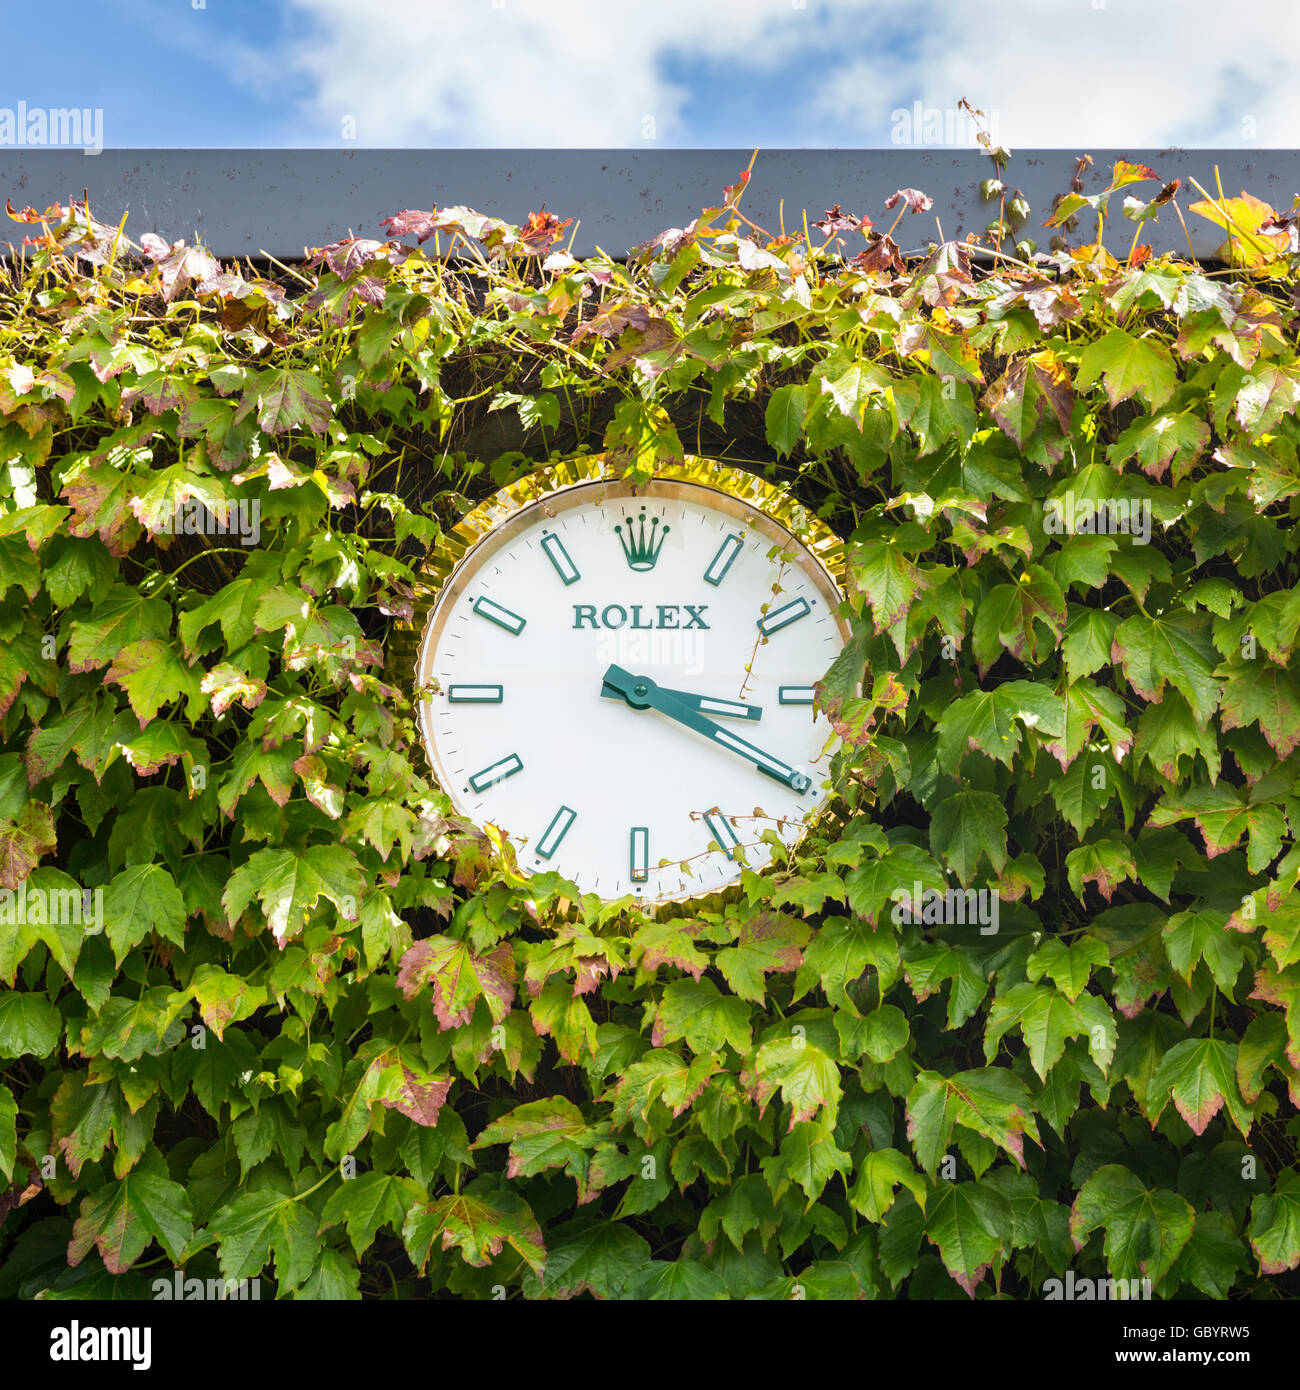 Rolex orologio da parete circondata da edera a tutti England Lawn Tennis Club durante il torneo di Wimbledon 2016 Foto Stock